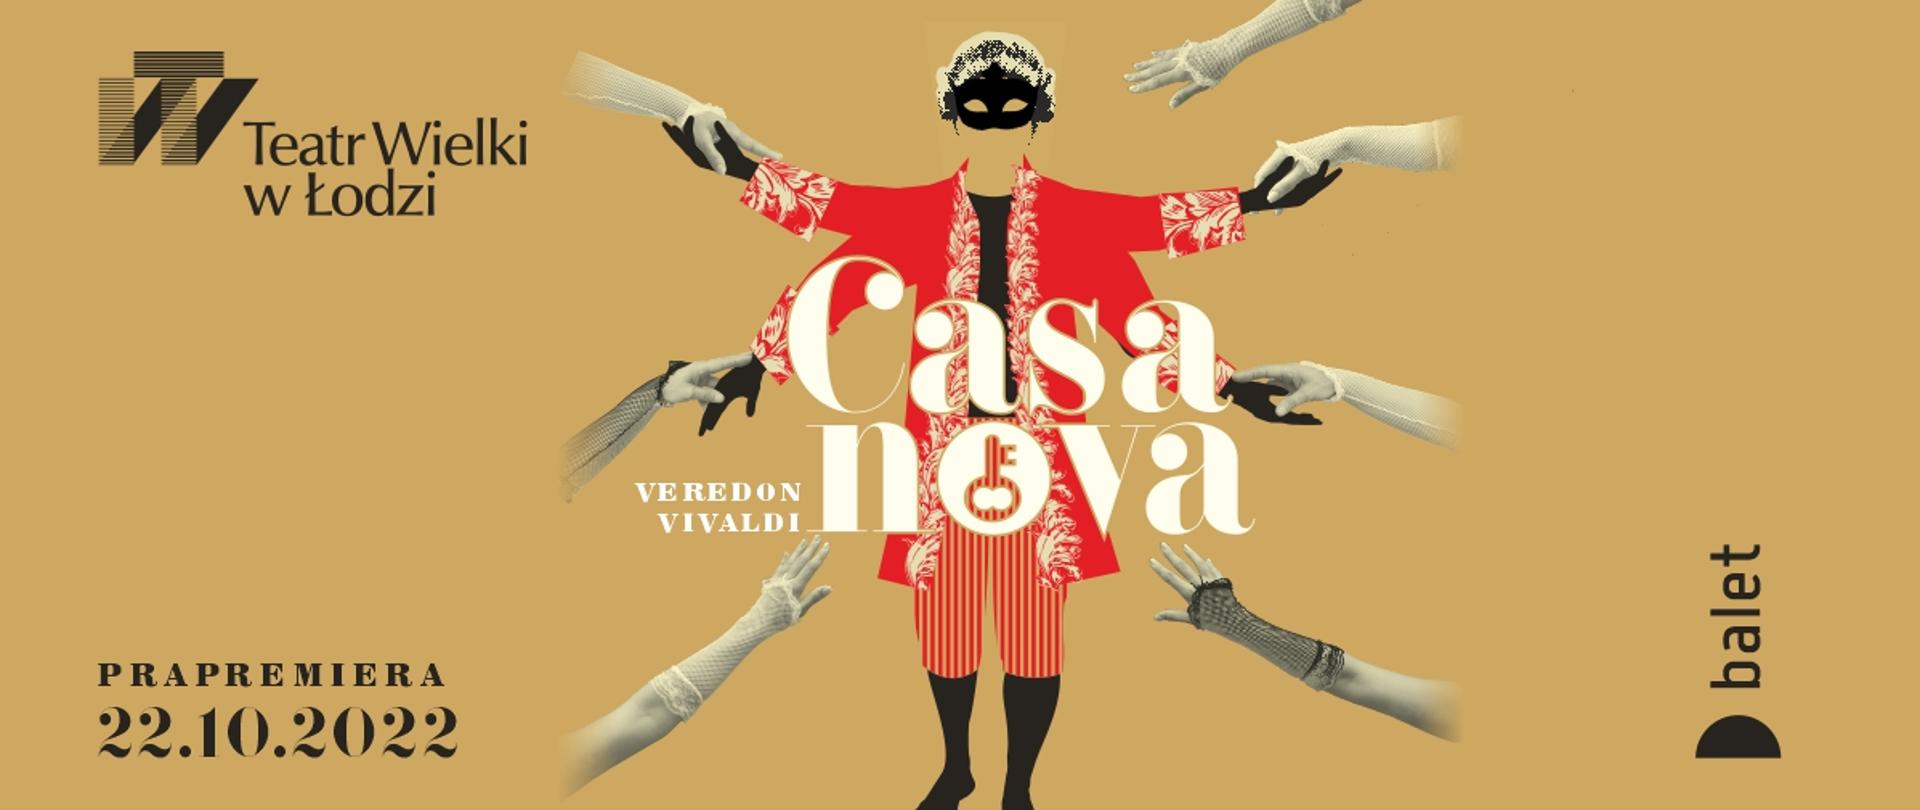 grafika: plakat spektaklu "Casanova" Teatru Wielkiego w Łodzi. Brzoskwiniowe tło, na środku grafika z postacią Casanovy w czerwonym ubraniu w którego stronę wyciągnięte są kobiece ręce. Prapremiera 22.10.2022